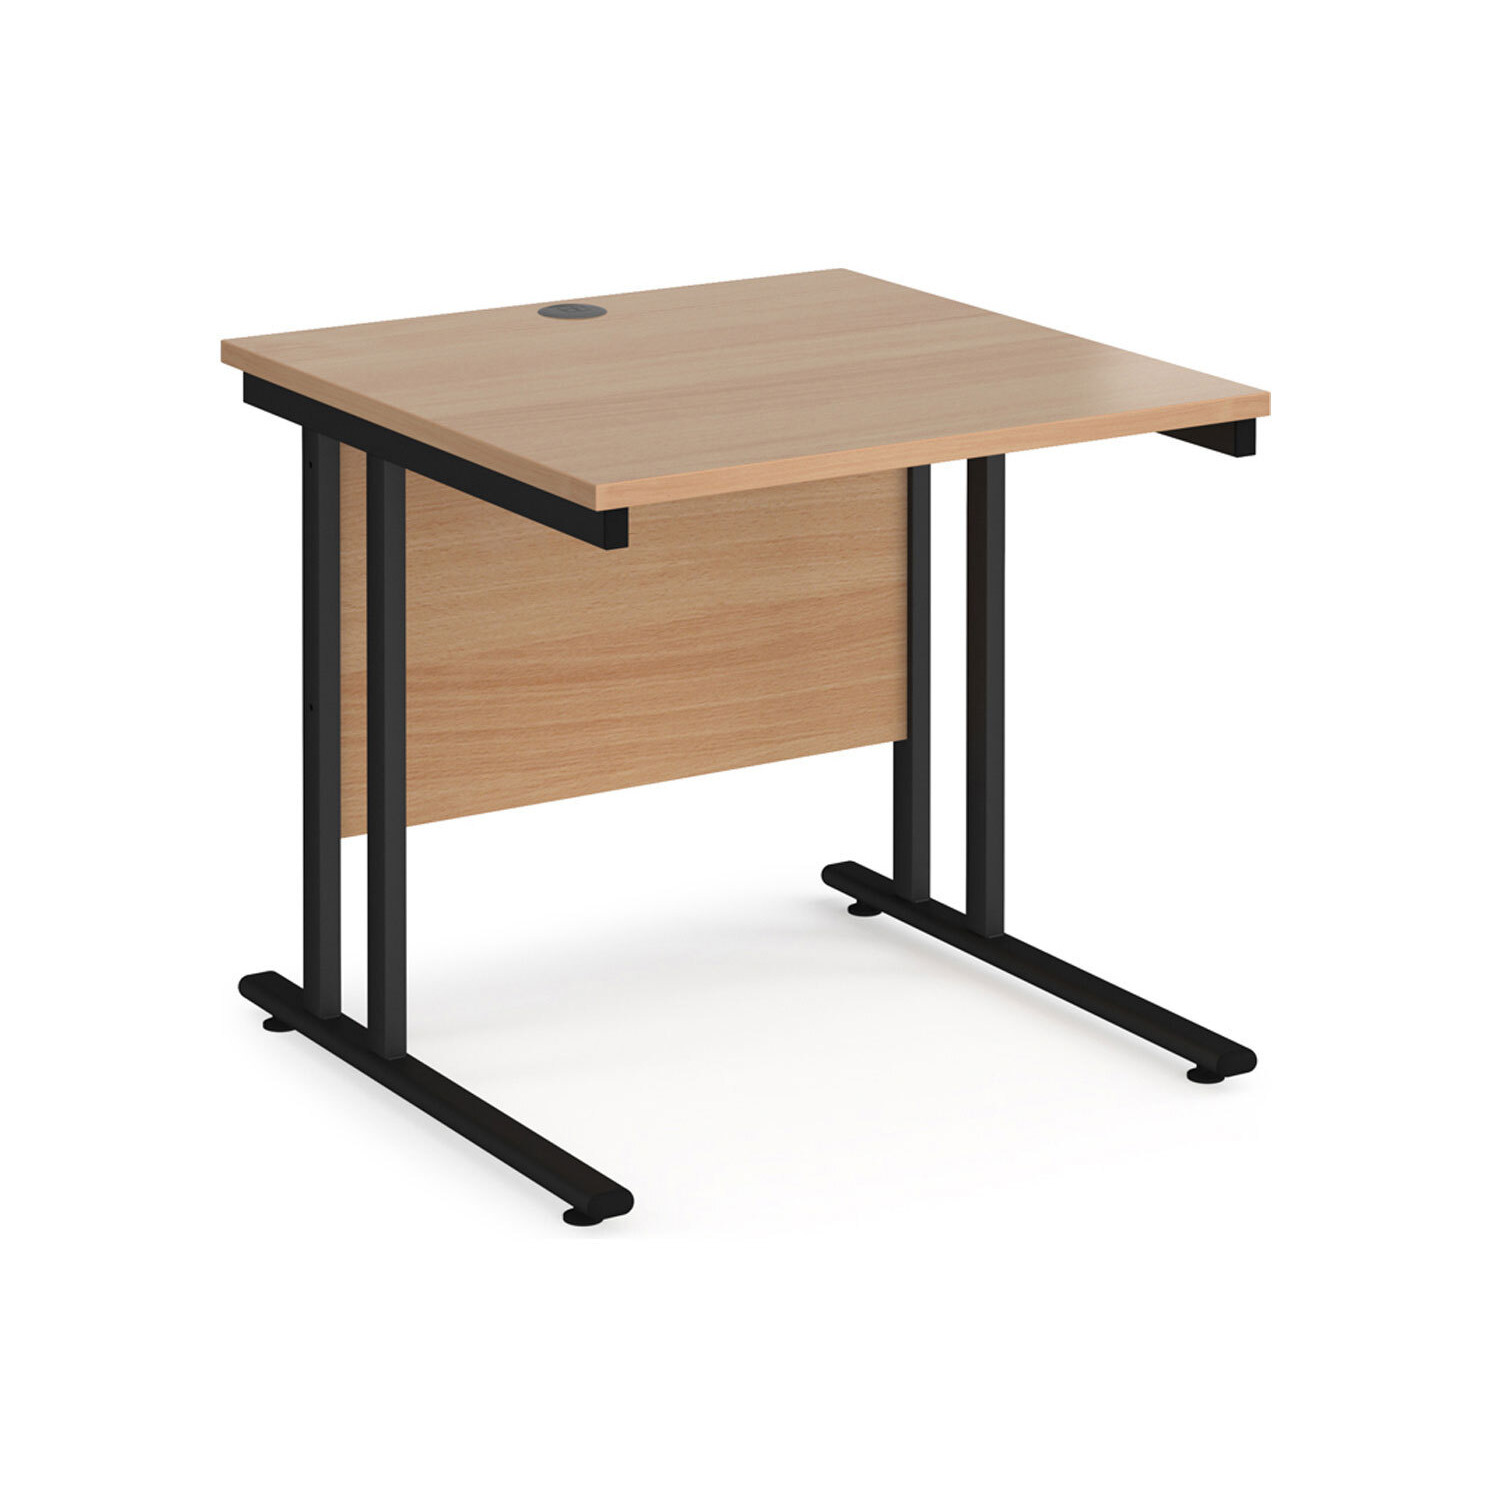 Value Line Deluxe C-Leg Rectangular Desk (Black Legs), 80wx80dx73h (cm), Beech